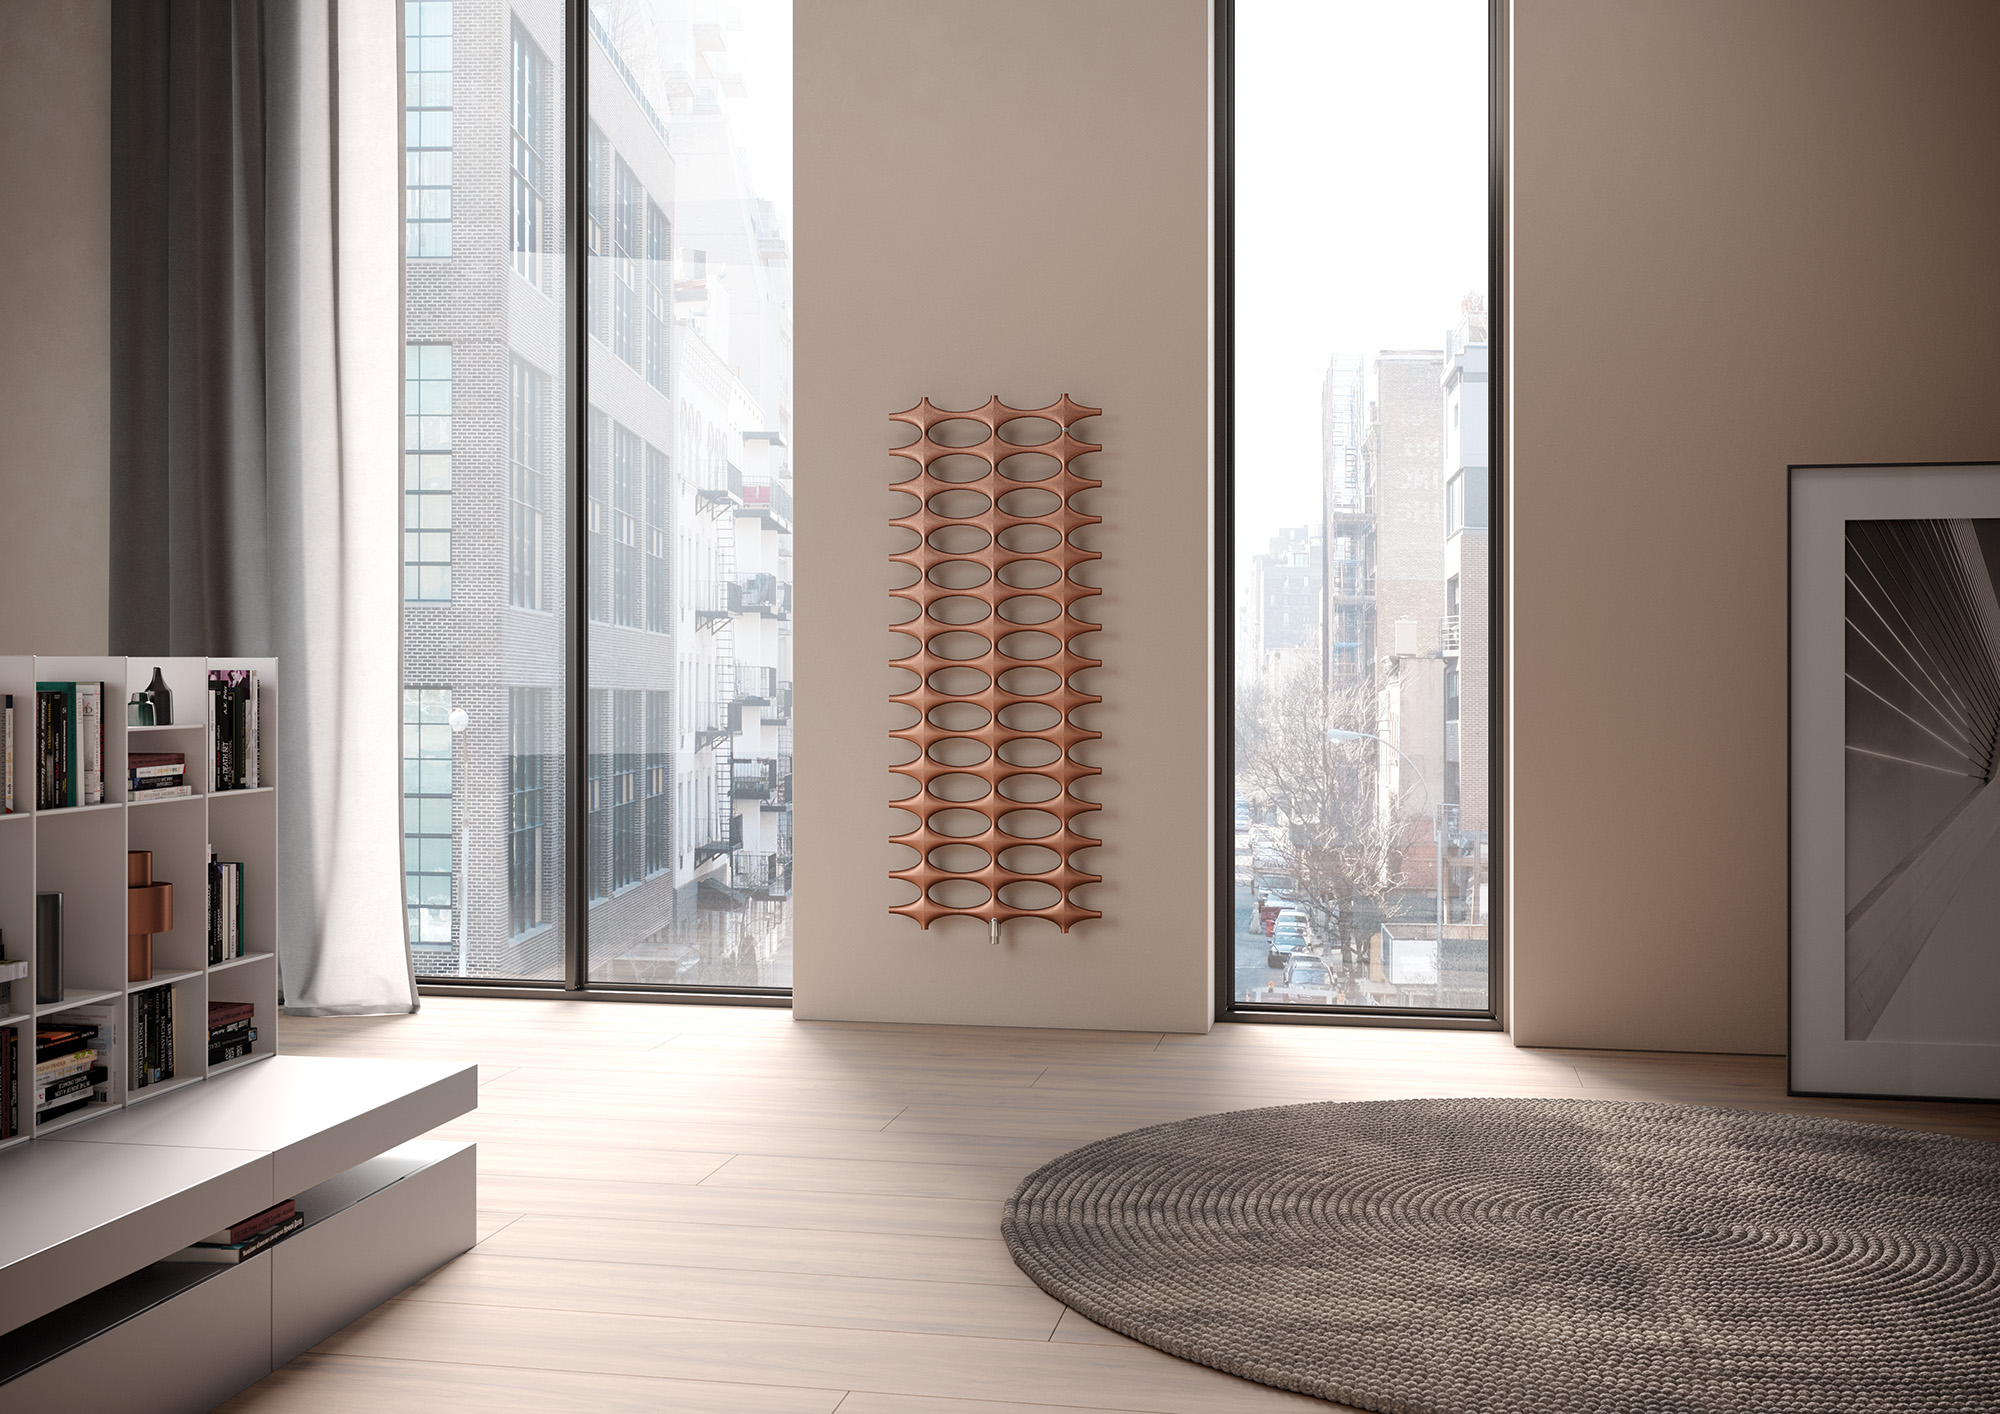 Kermi Ideos dizaino radiatorius – rankšluosčių džiovintuvas – unikalus, išskirtinis radiatoriaus dizainas elementarioje konstrukcijoje.